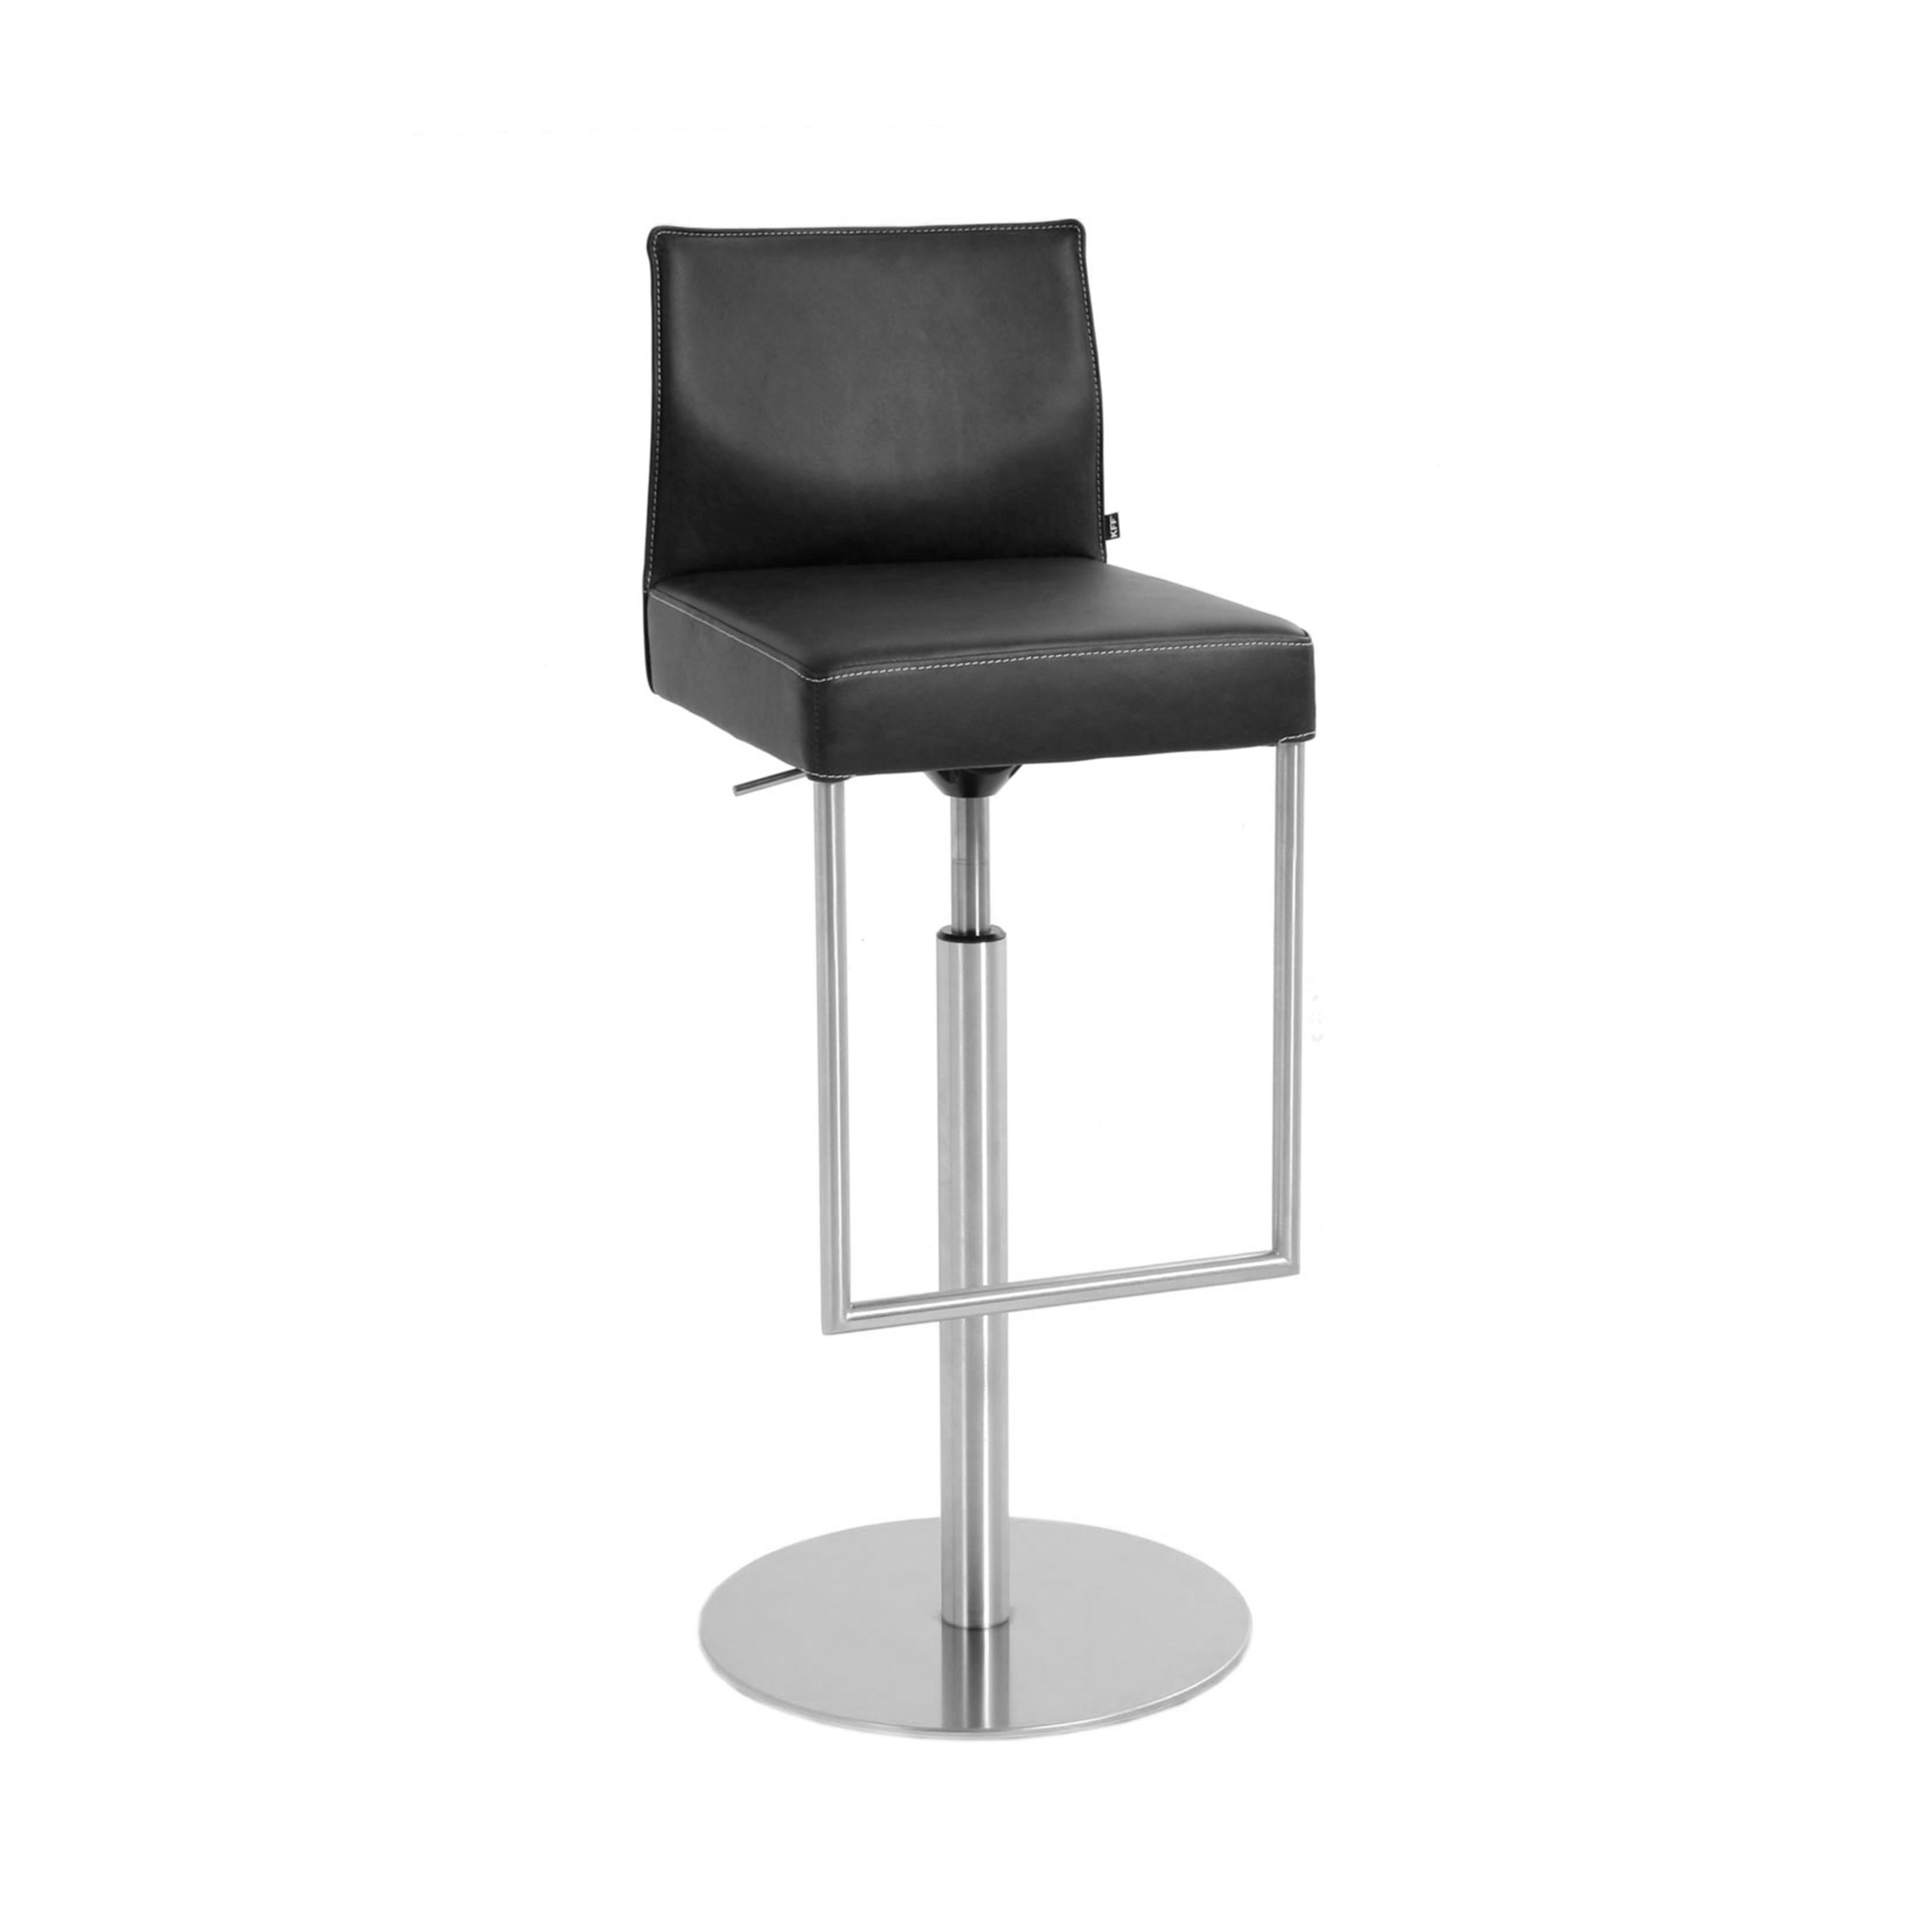 Un concetto di design - molti prototipi: che si tratti di sedie convenzionali, catilever o sgabelli da bar, compresi quelli a molla pneumatica, GLOOH, oltre ad avere un'ampia gamma di prodotti e comfort da offrire, trasmette un design